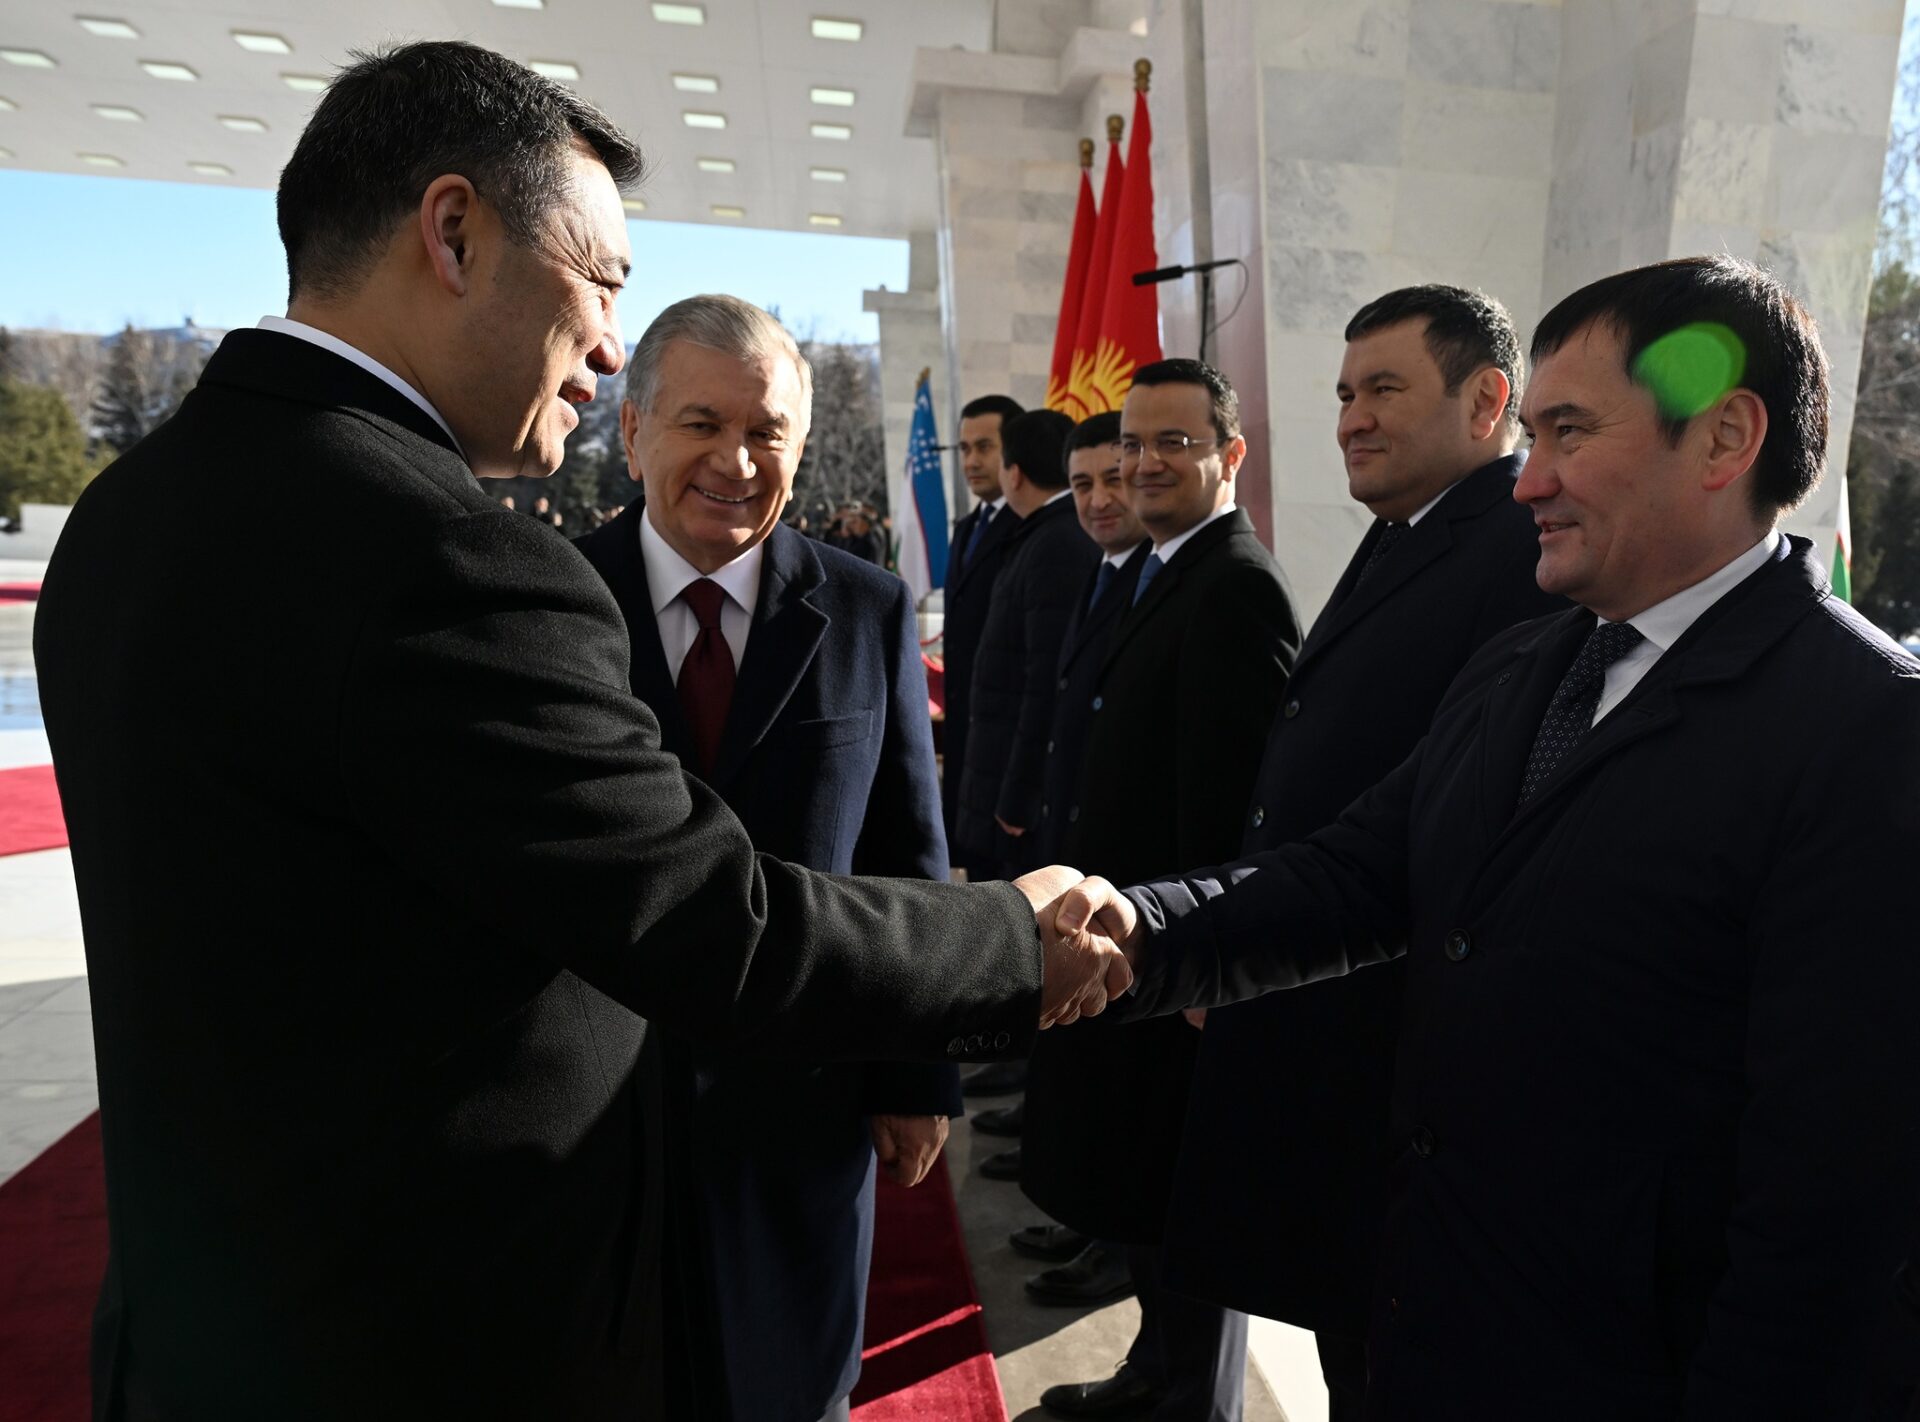 327738945 493853122821874 4168900008563449234 n В Бишкеке состоялась церемония официальной встречи Жапарова и Мирзиёева - фото